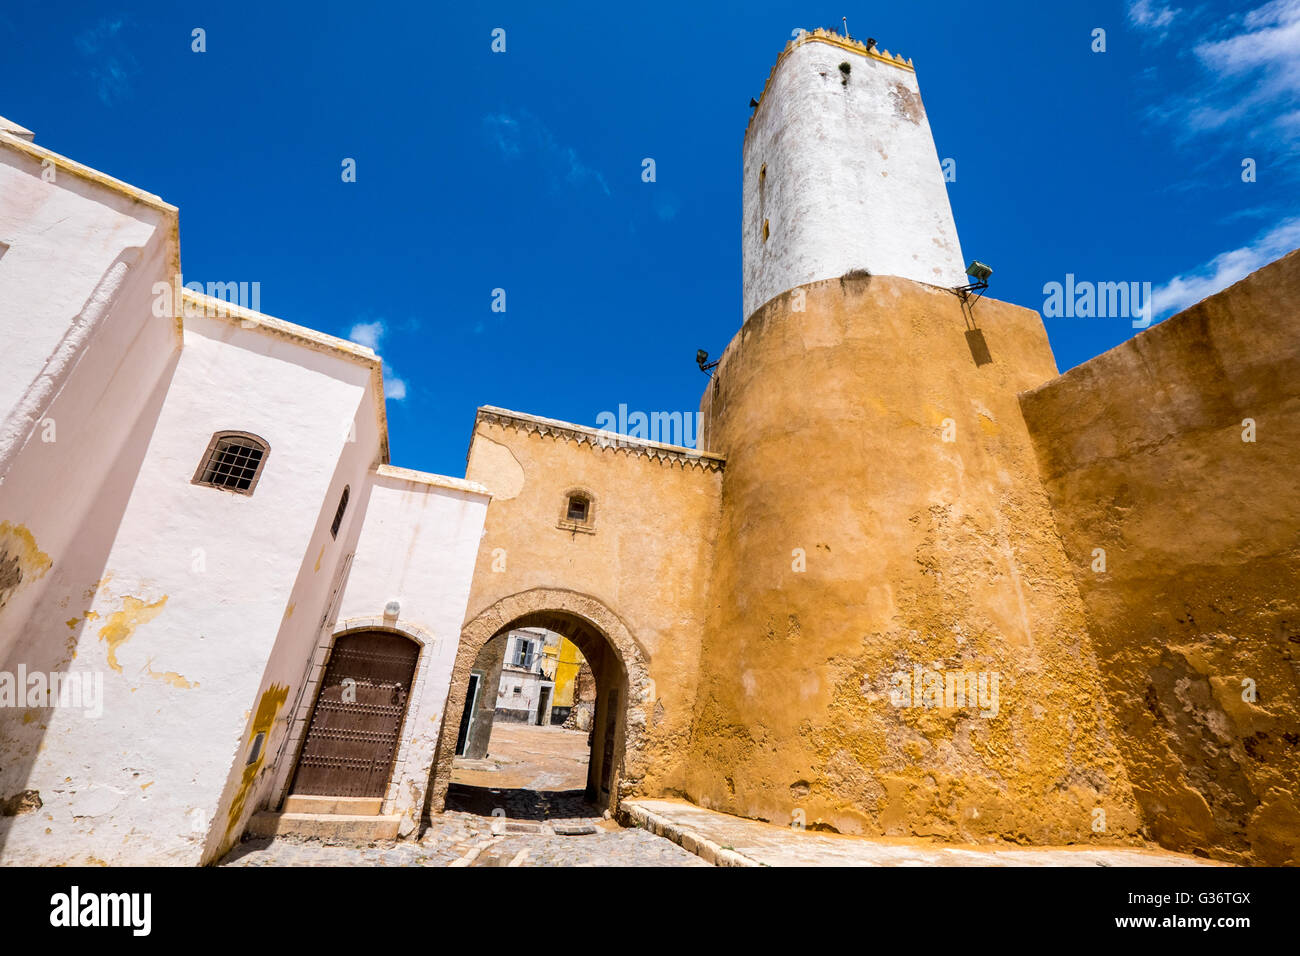 Architecture typique dans la médina (vieille ville) d'El Jadida, une ancienne ville fortifiée portugaise sur la côte atlantique du Maroc Banque D'Images